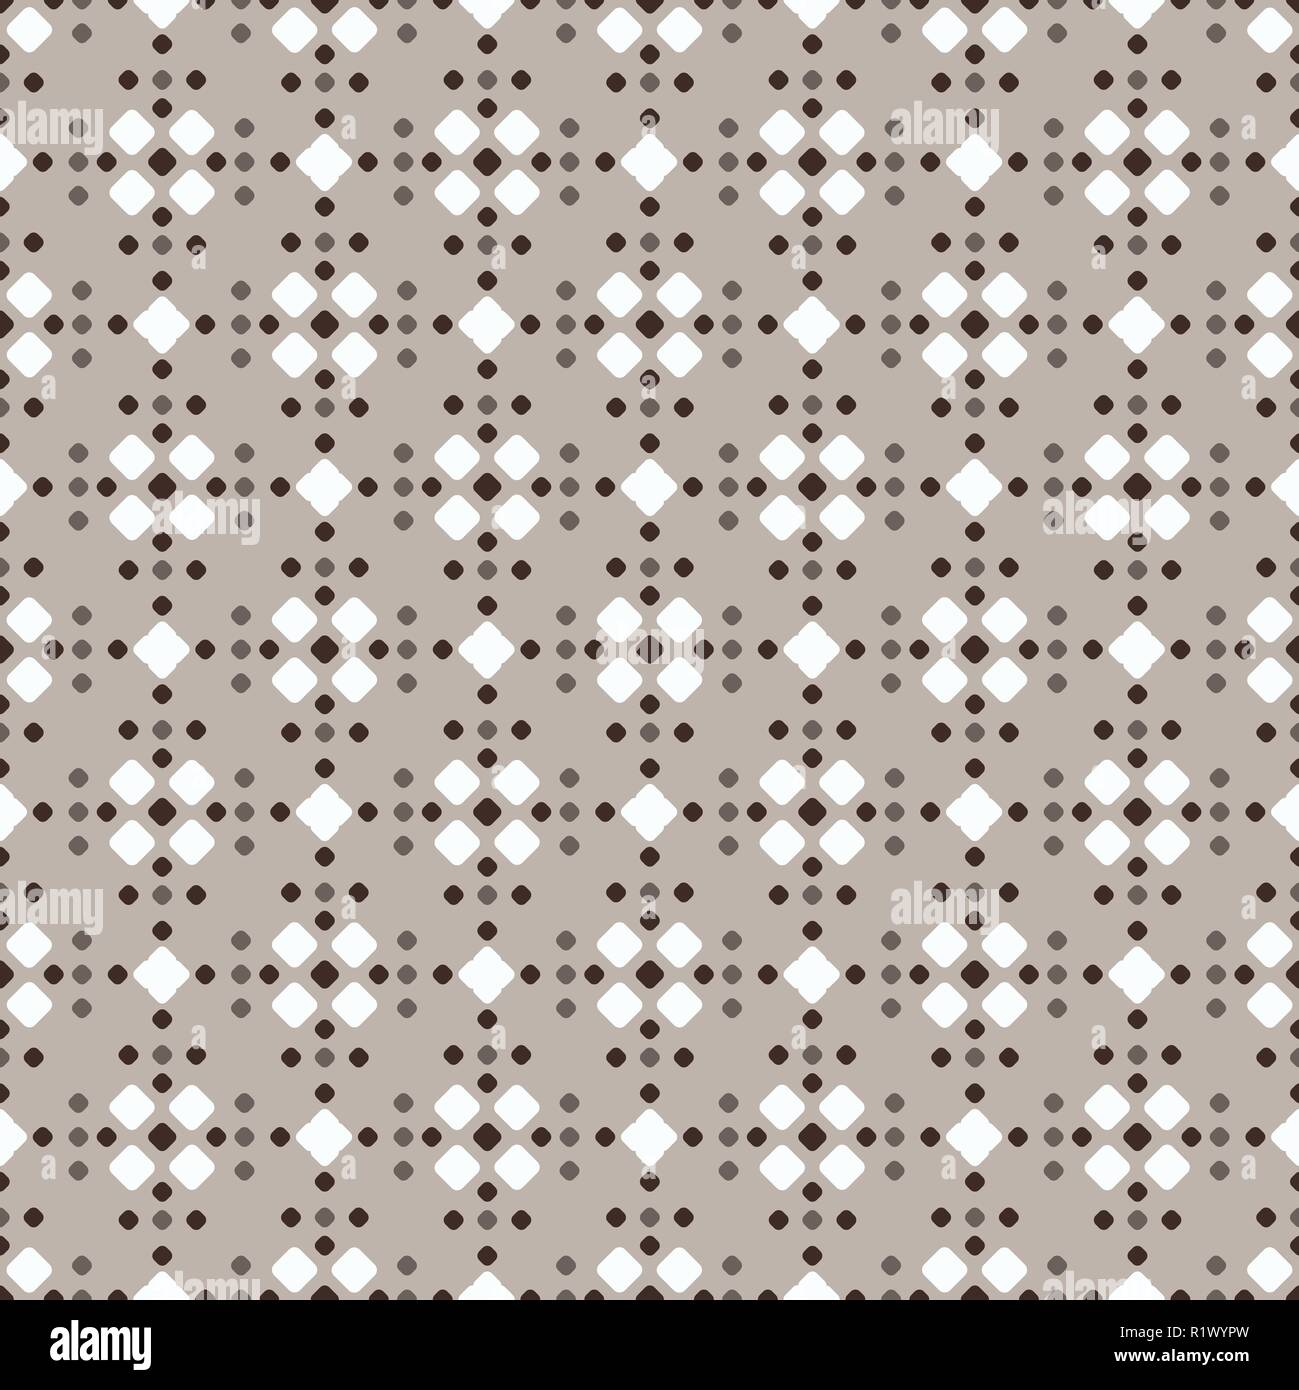 Fair Isle stile bianco beige marrone vector seamless pattern con il rombo Illustrazione Vettoriale